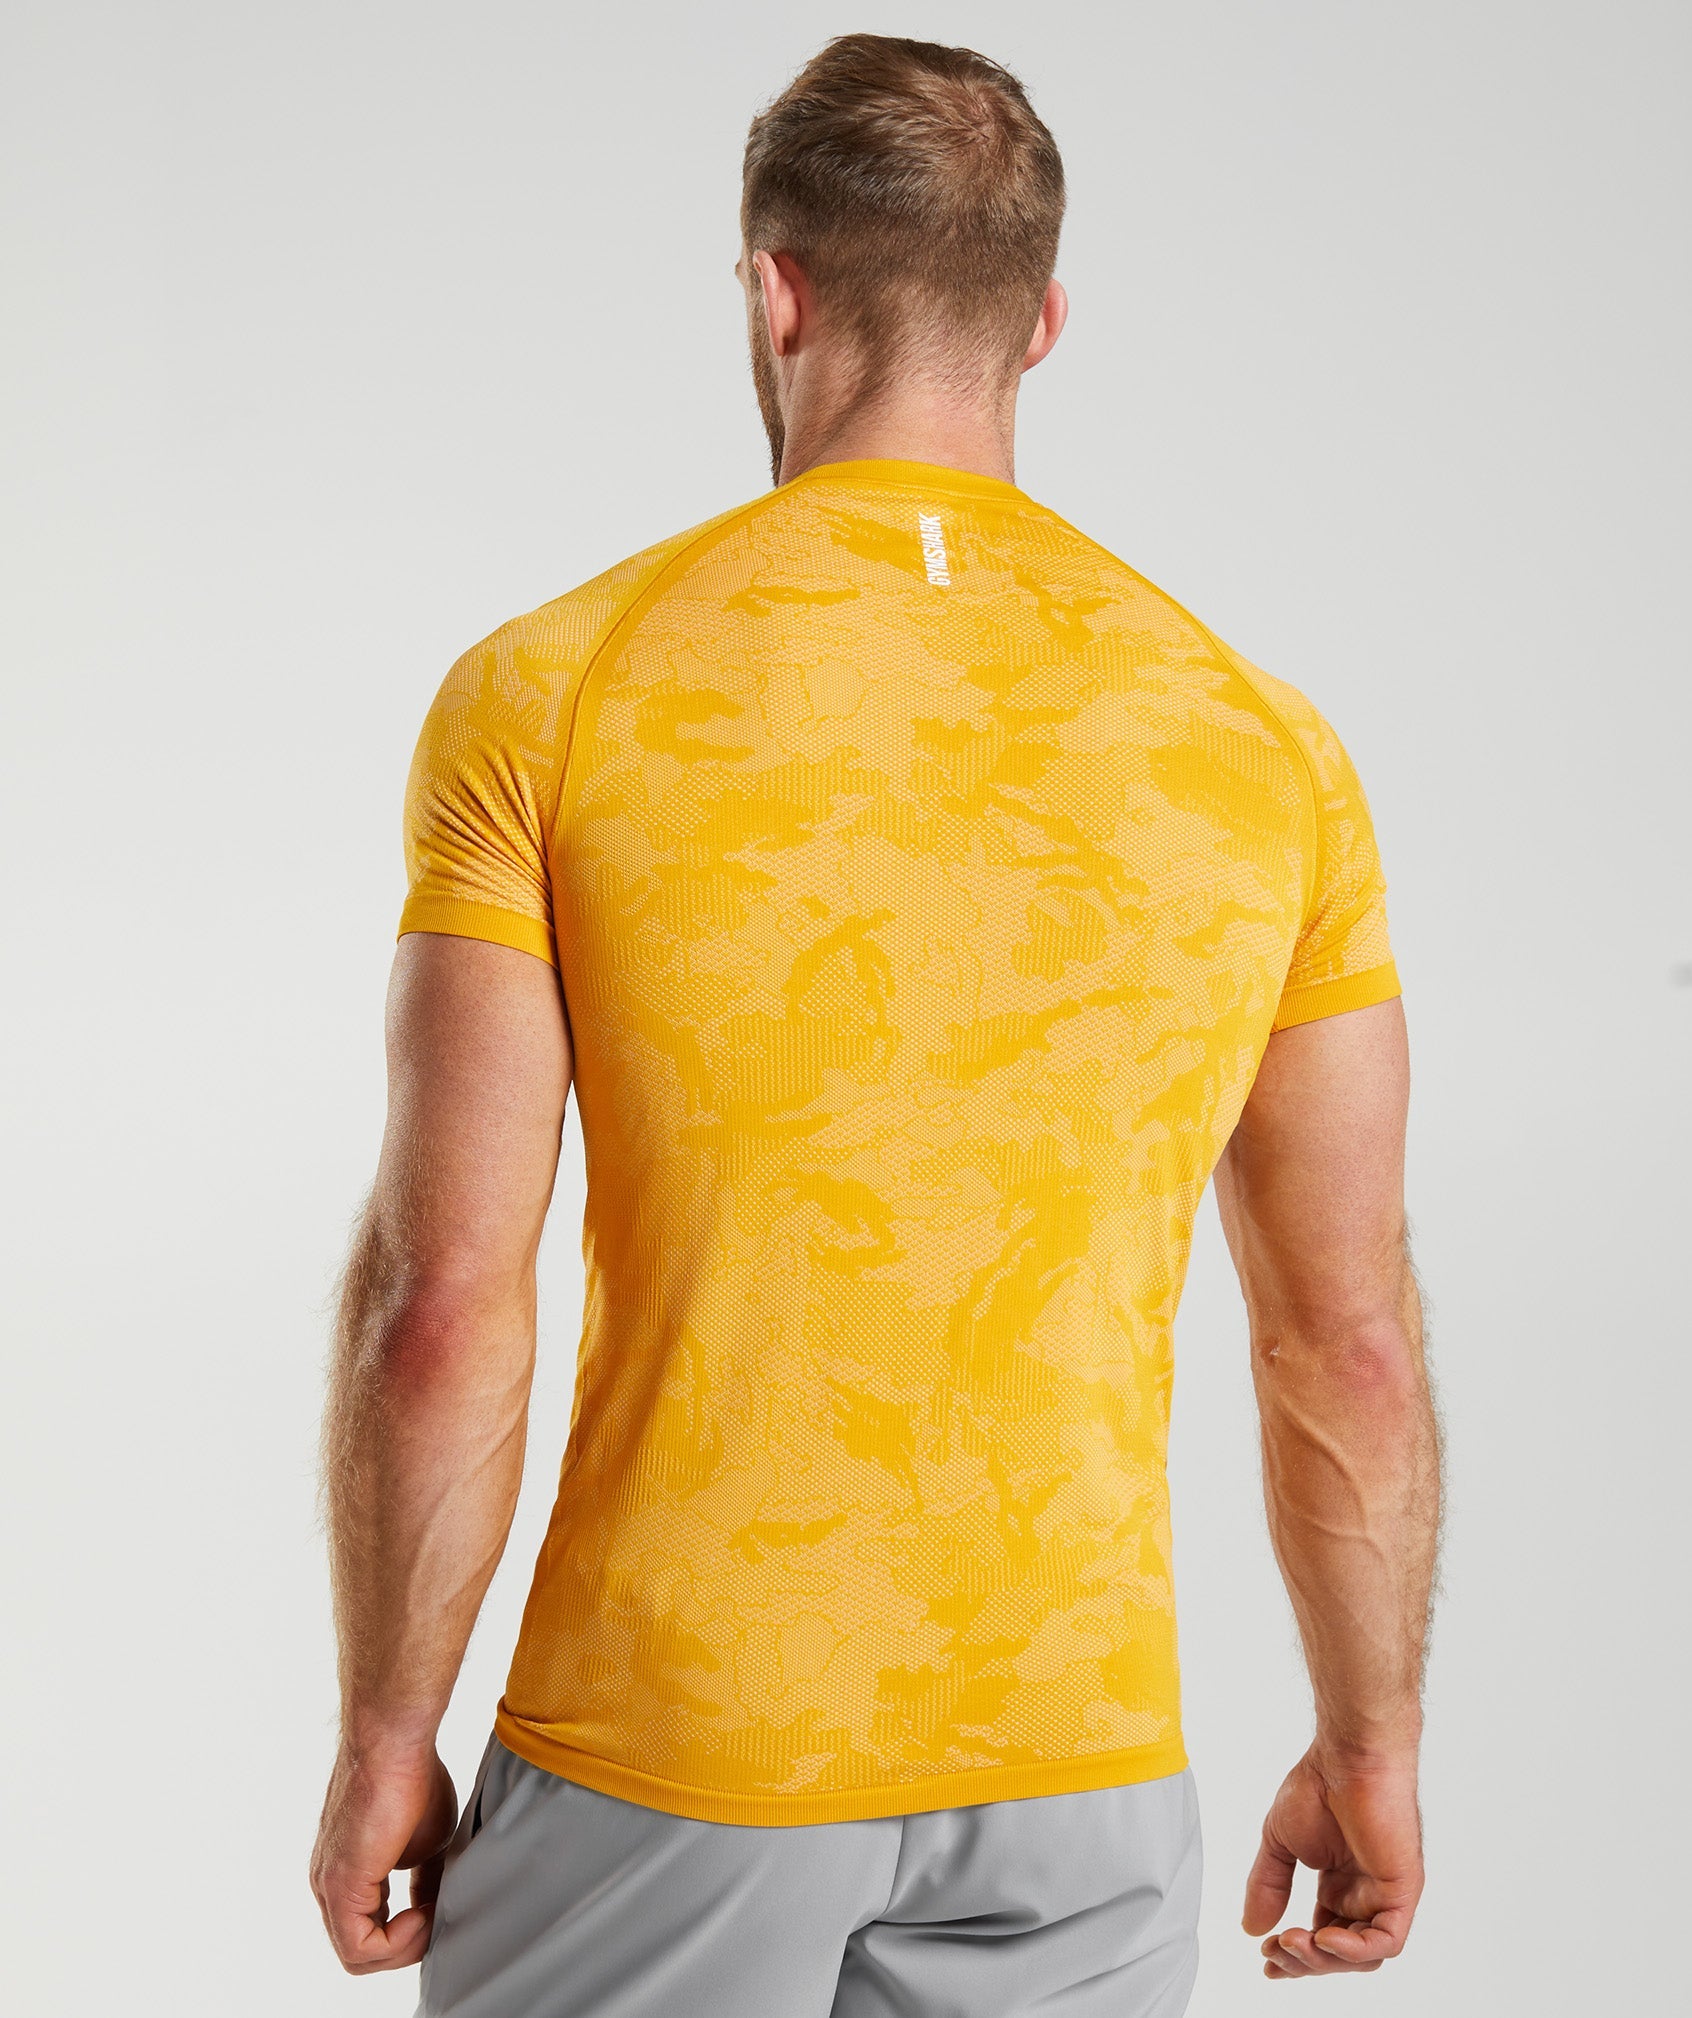 Geo Seamless T-Shirt in Sunny Yellow/White - view 2